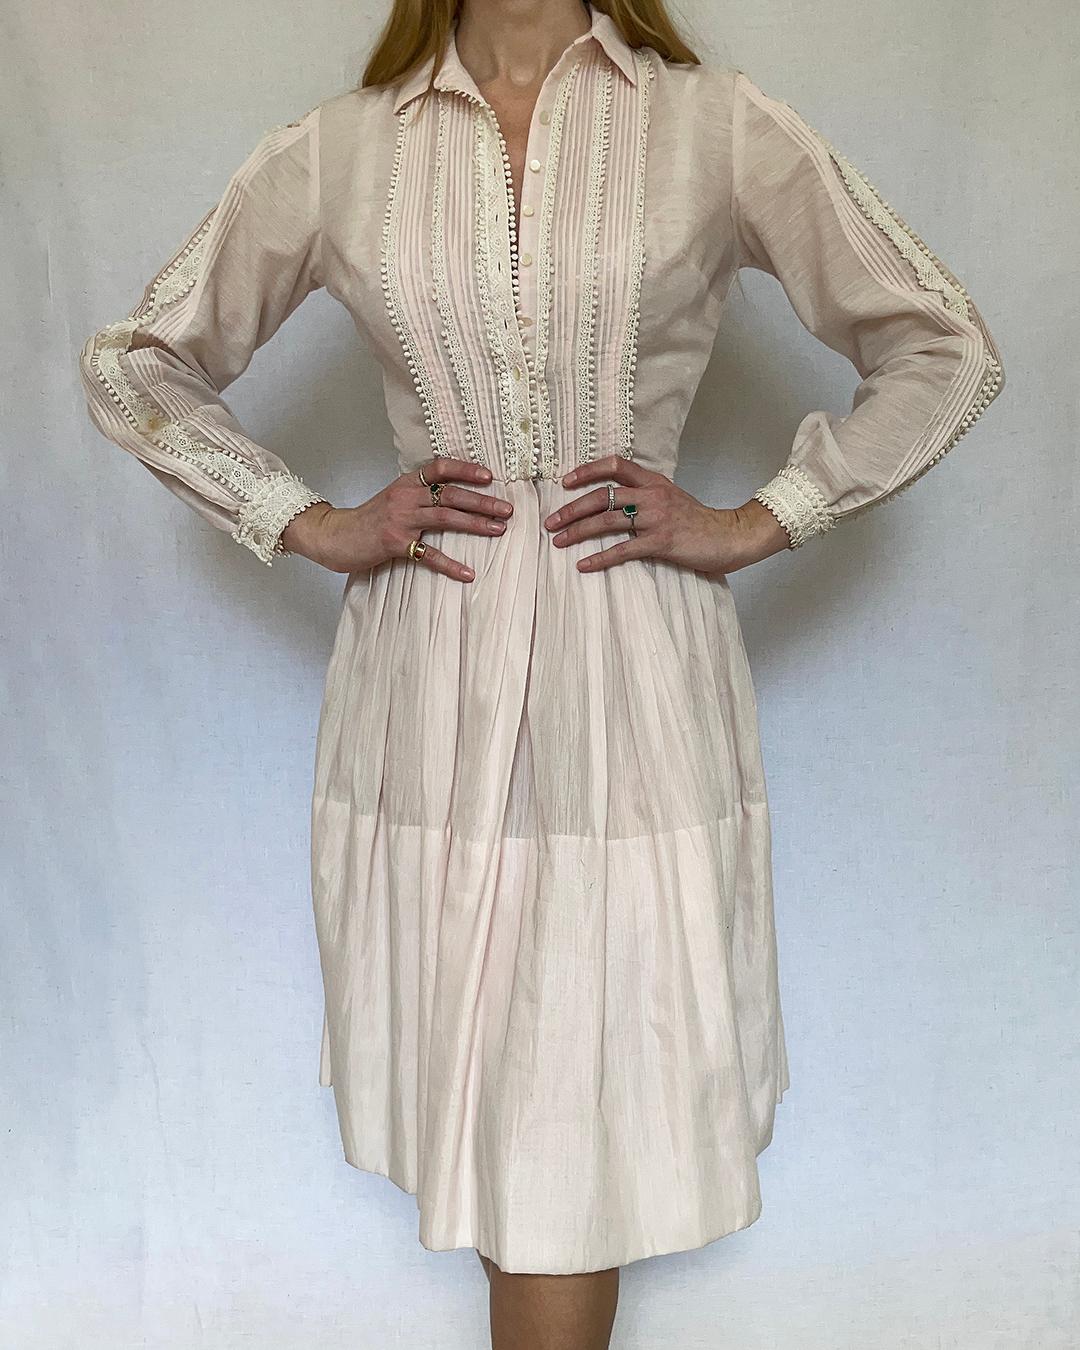  Vintage 1950s Shirtwaist Dress by L'AIGLON For Sale 3